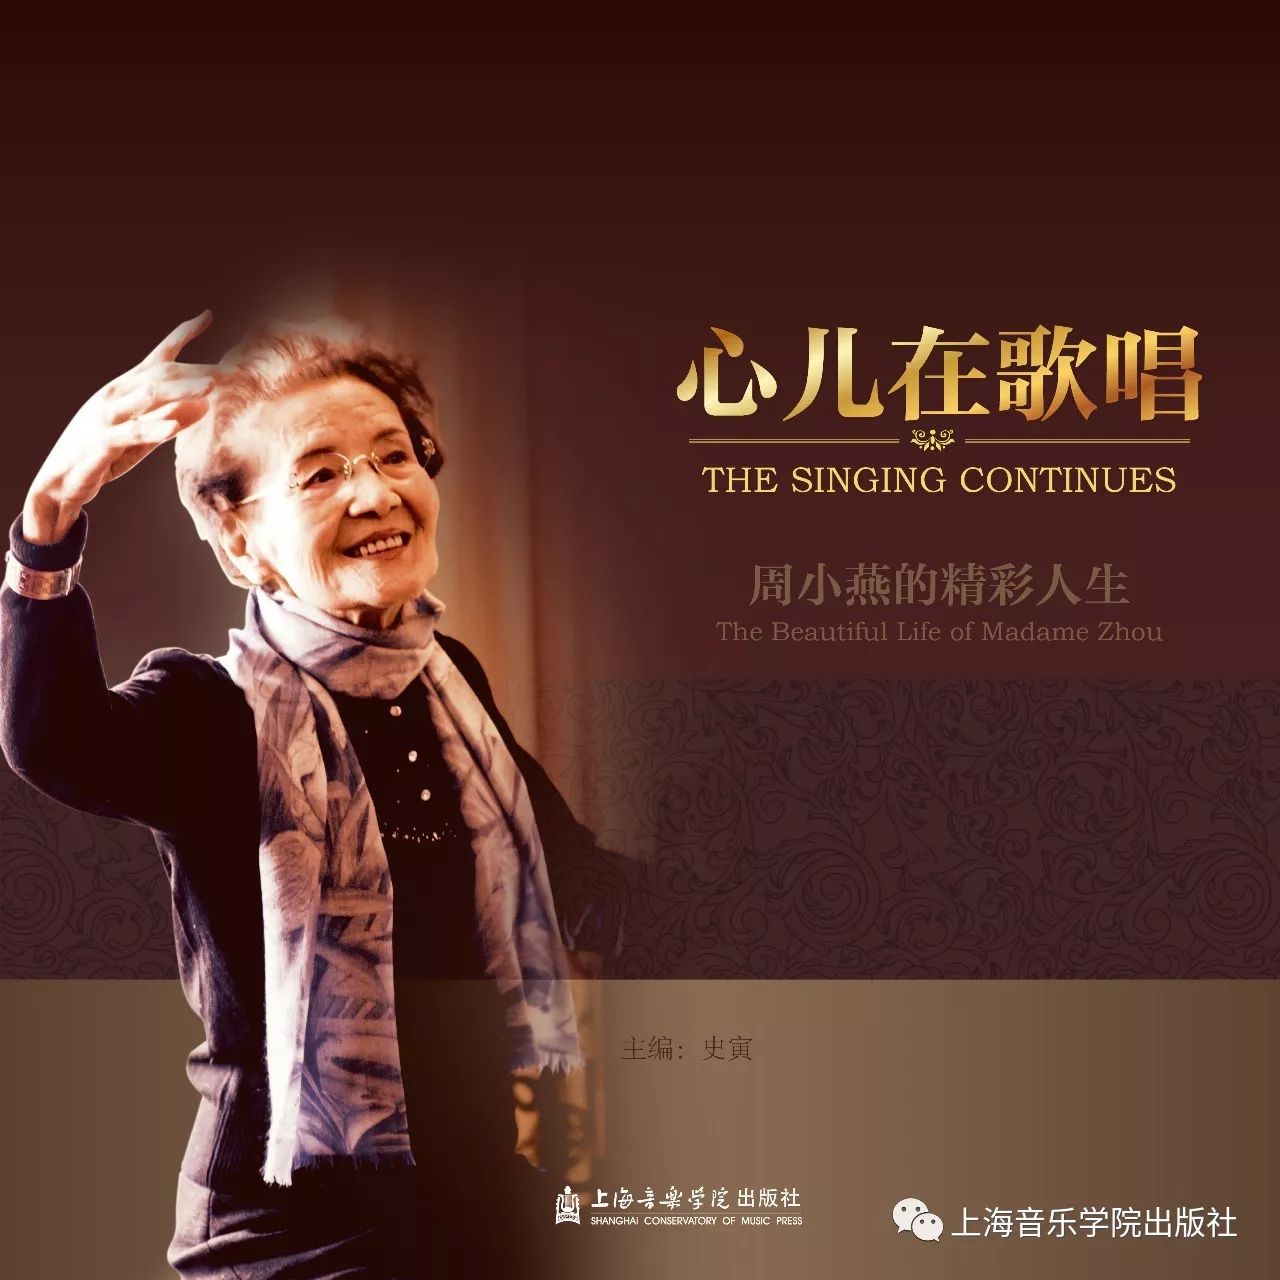 声乐教育家周小燕先生的画册,由廖昌永作序,以人生历程和教学生涯为